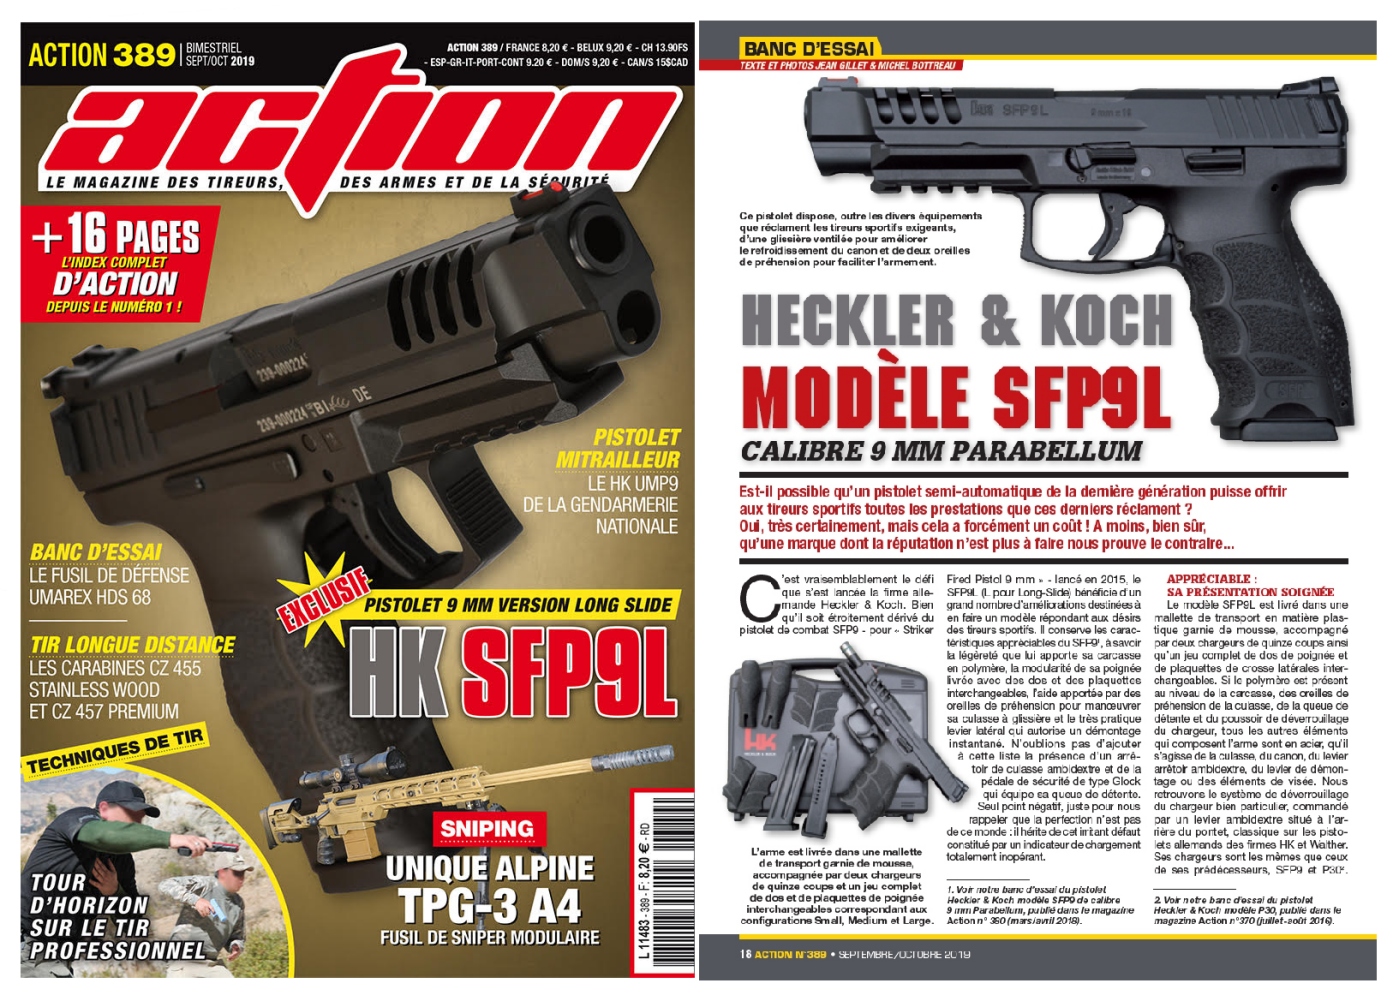 Le banc d’essai du pistolet Pistolet HK SFP9L a été publié sur 6 pages dans le magazine Action n°389 (septembre-octobre 2019).